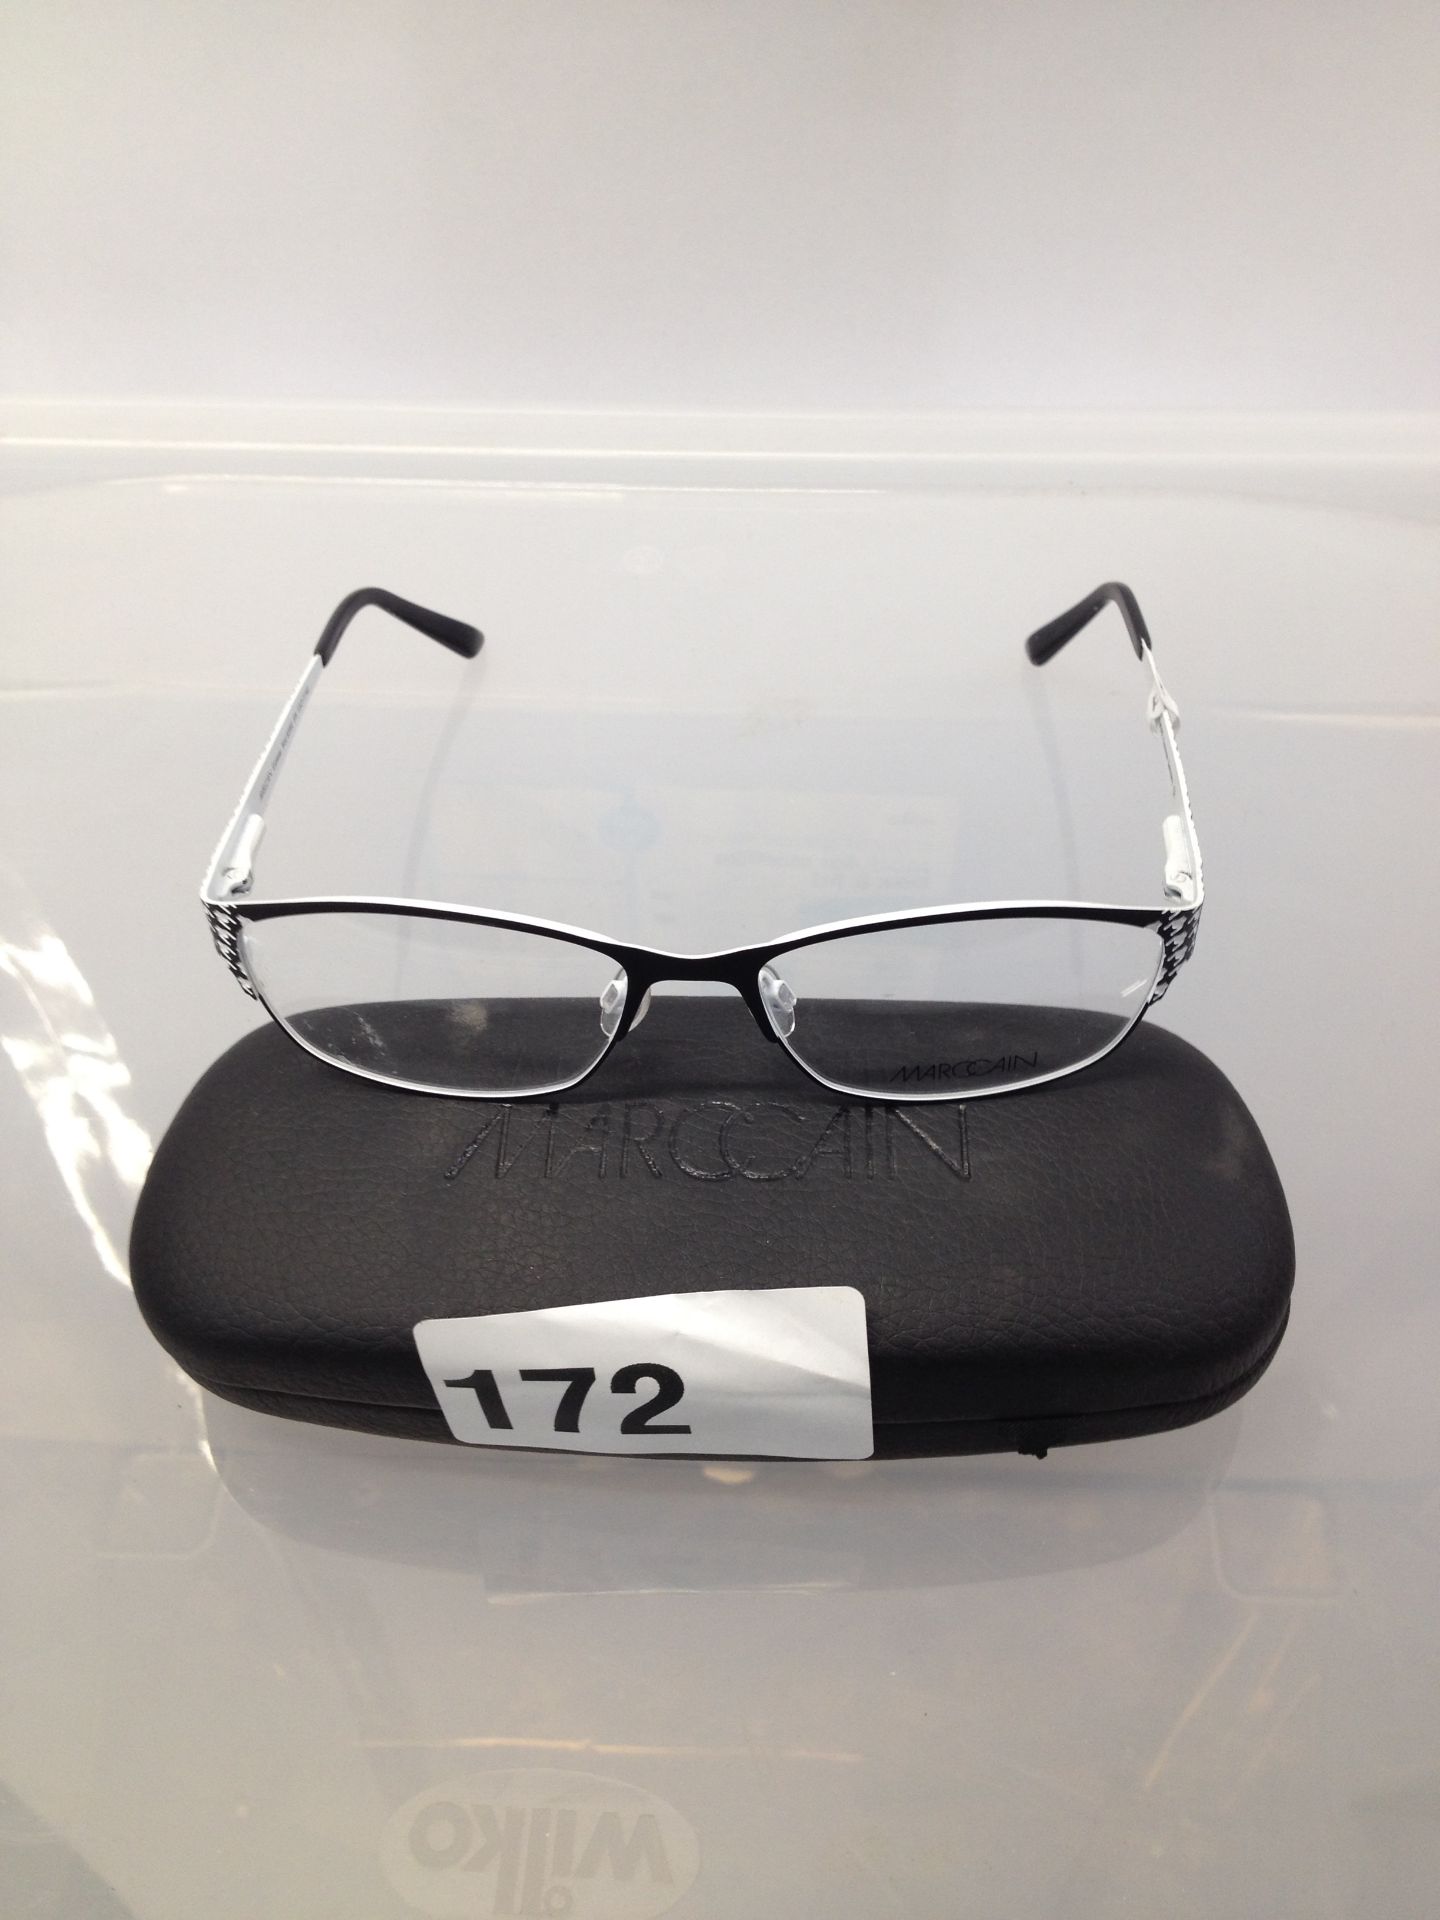 1 x MARCCAIN Glasses